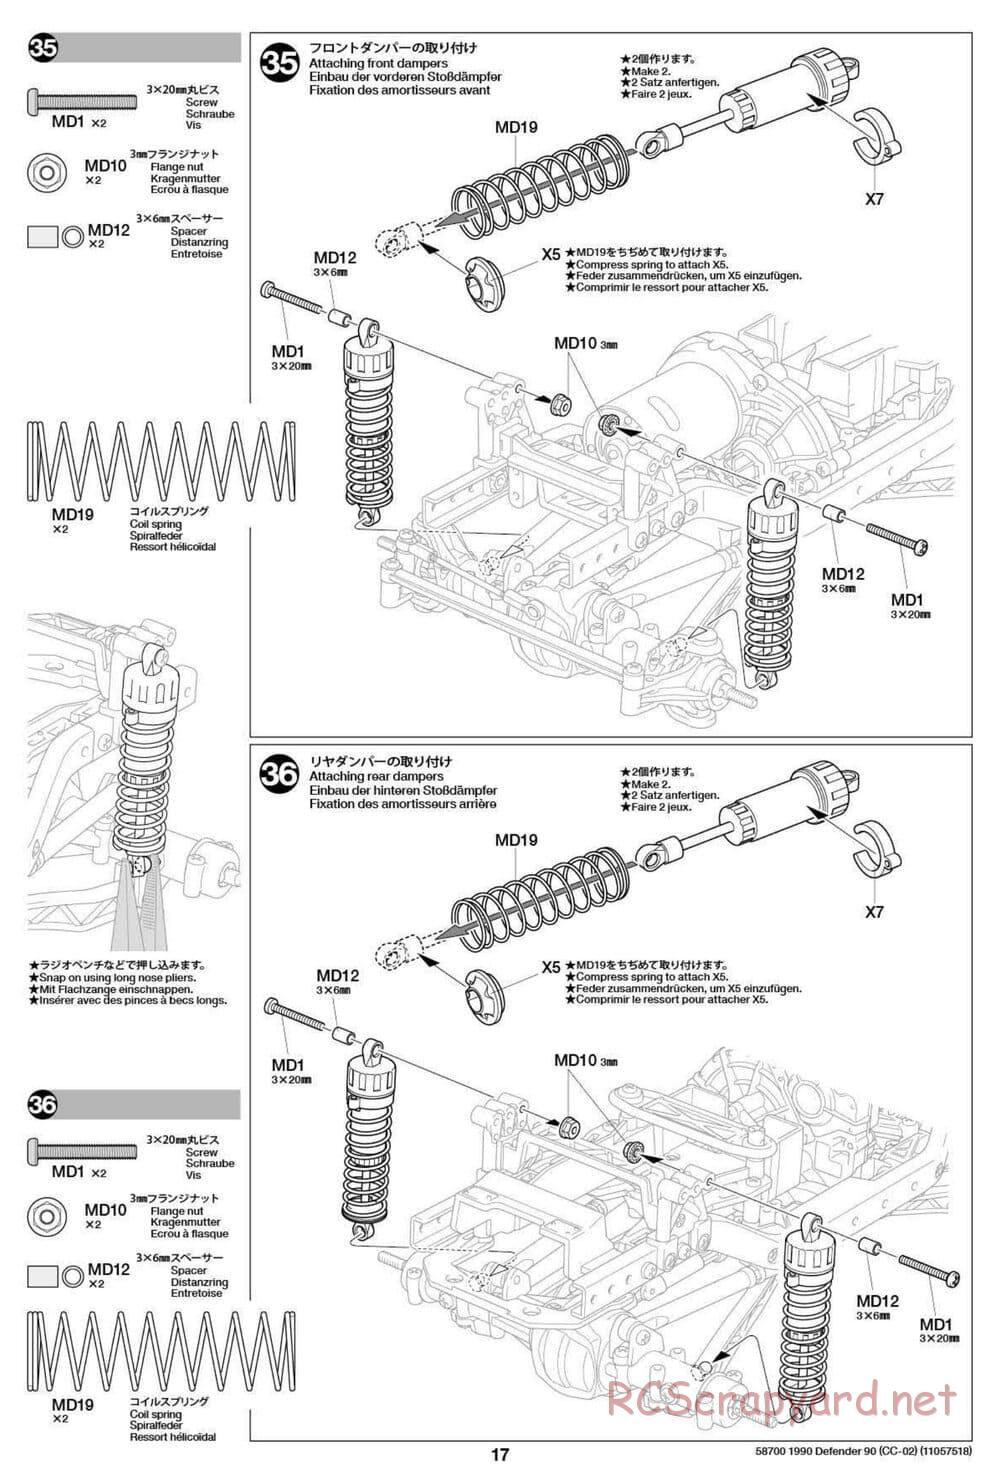 Tamiya - 1990 Land Rover Defender 90 - CC-02 Chassis - Manual - Page 17